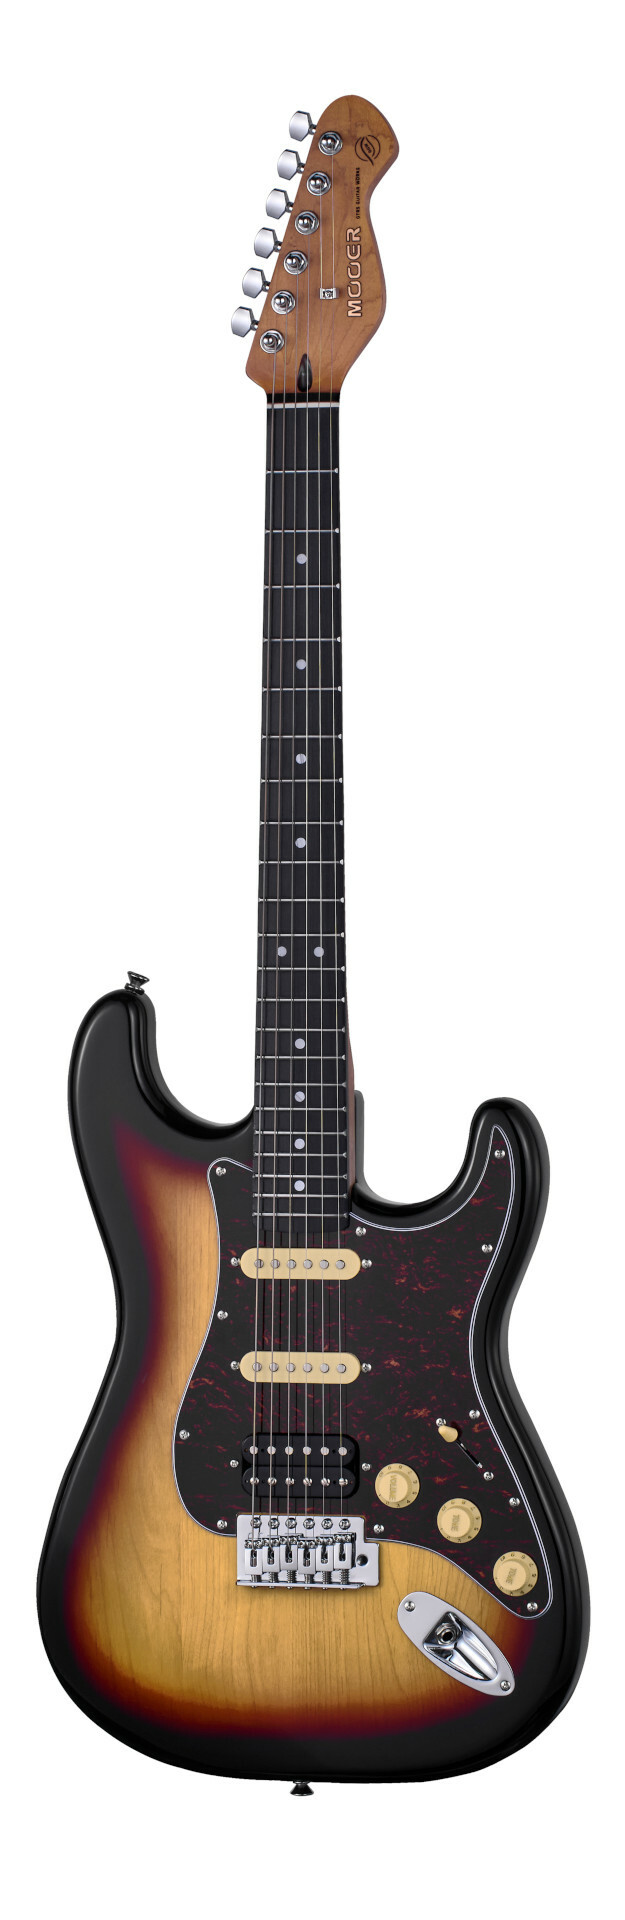 Mooer MSC10 Pro Guitar - Sunburst